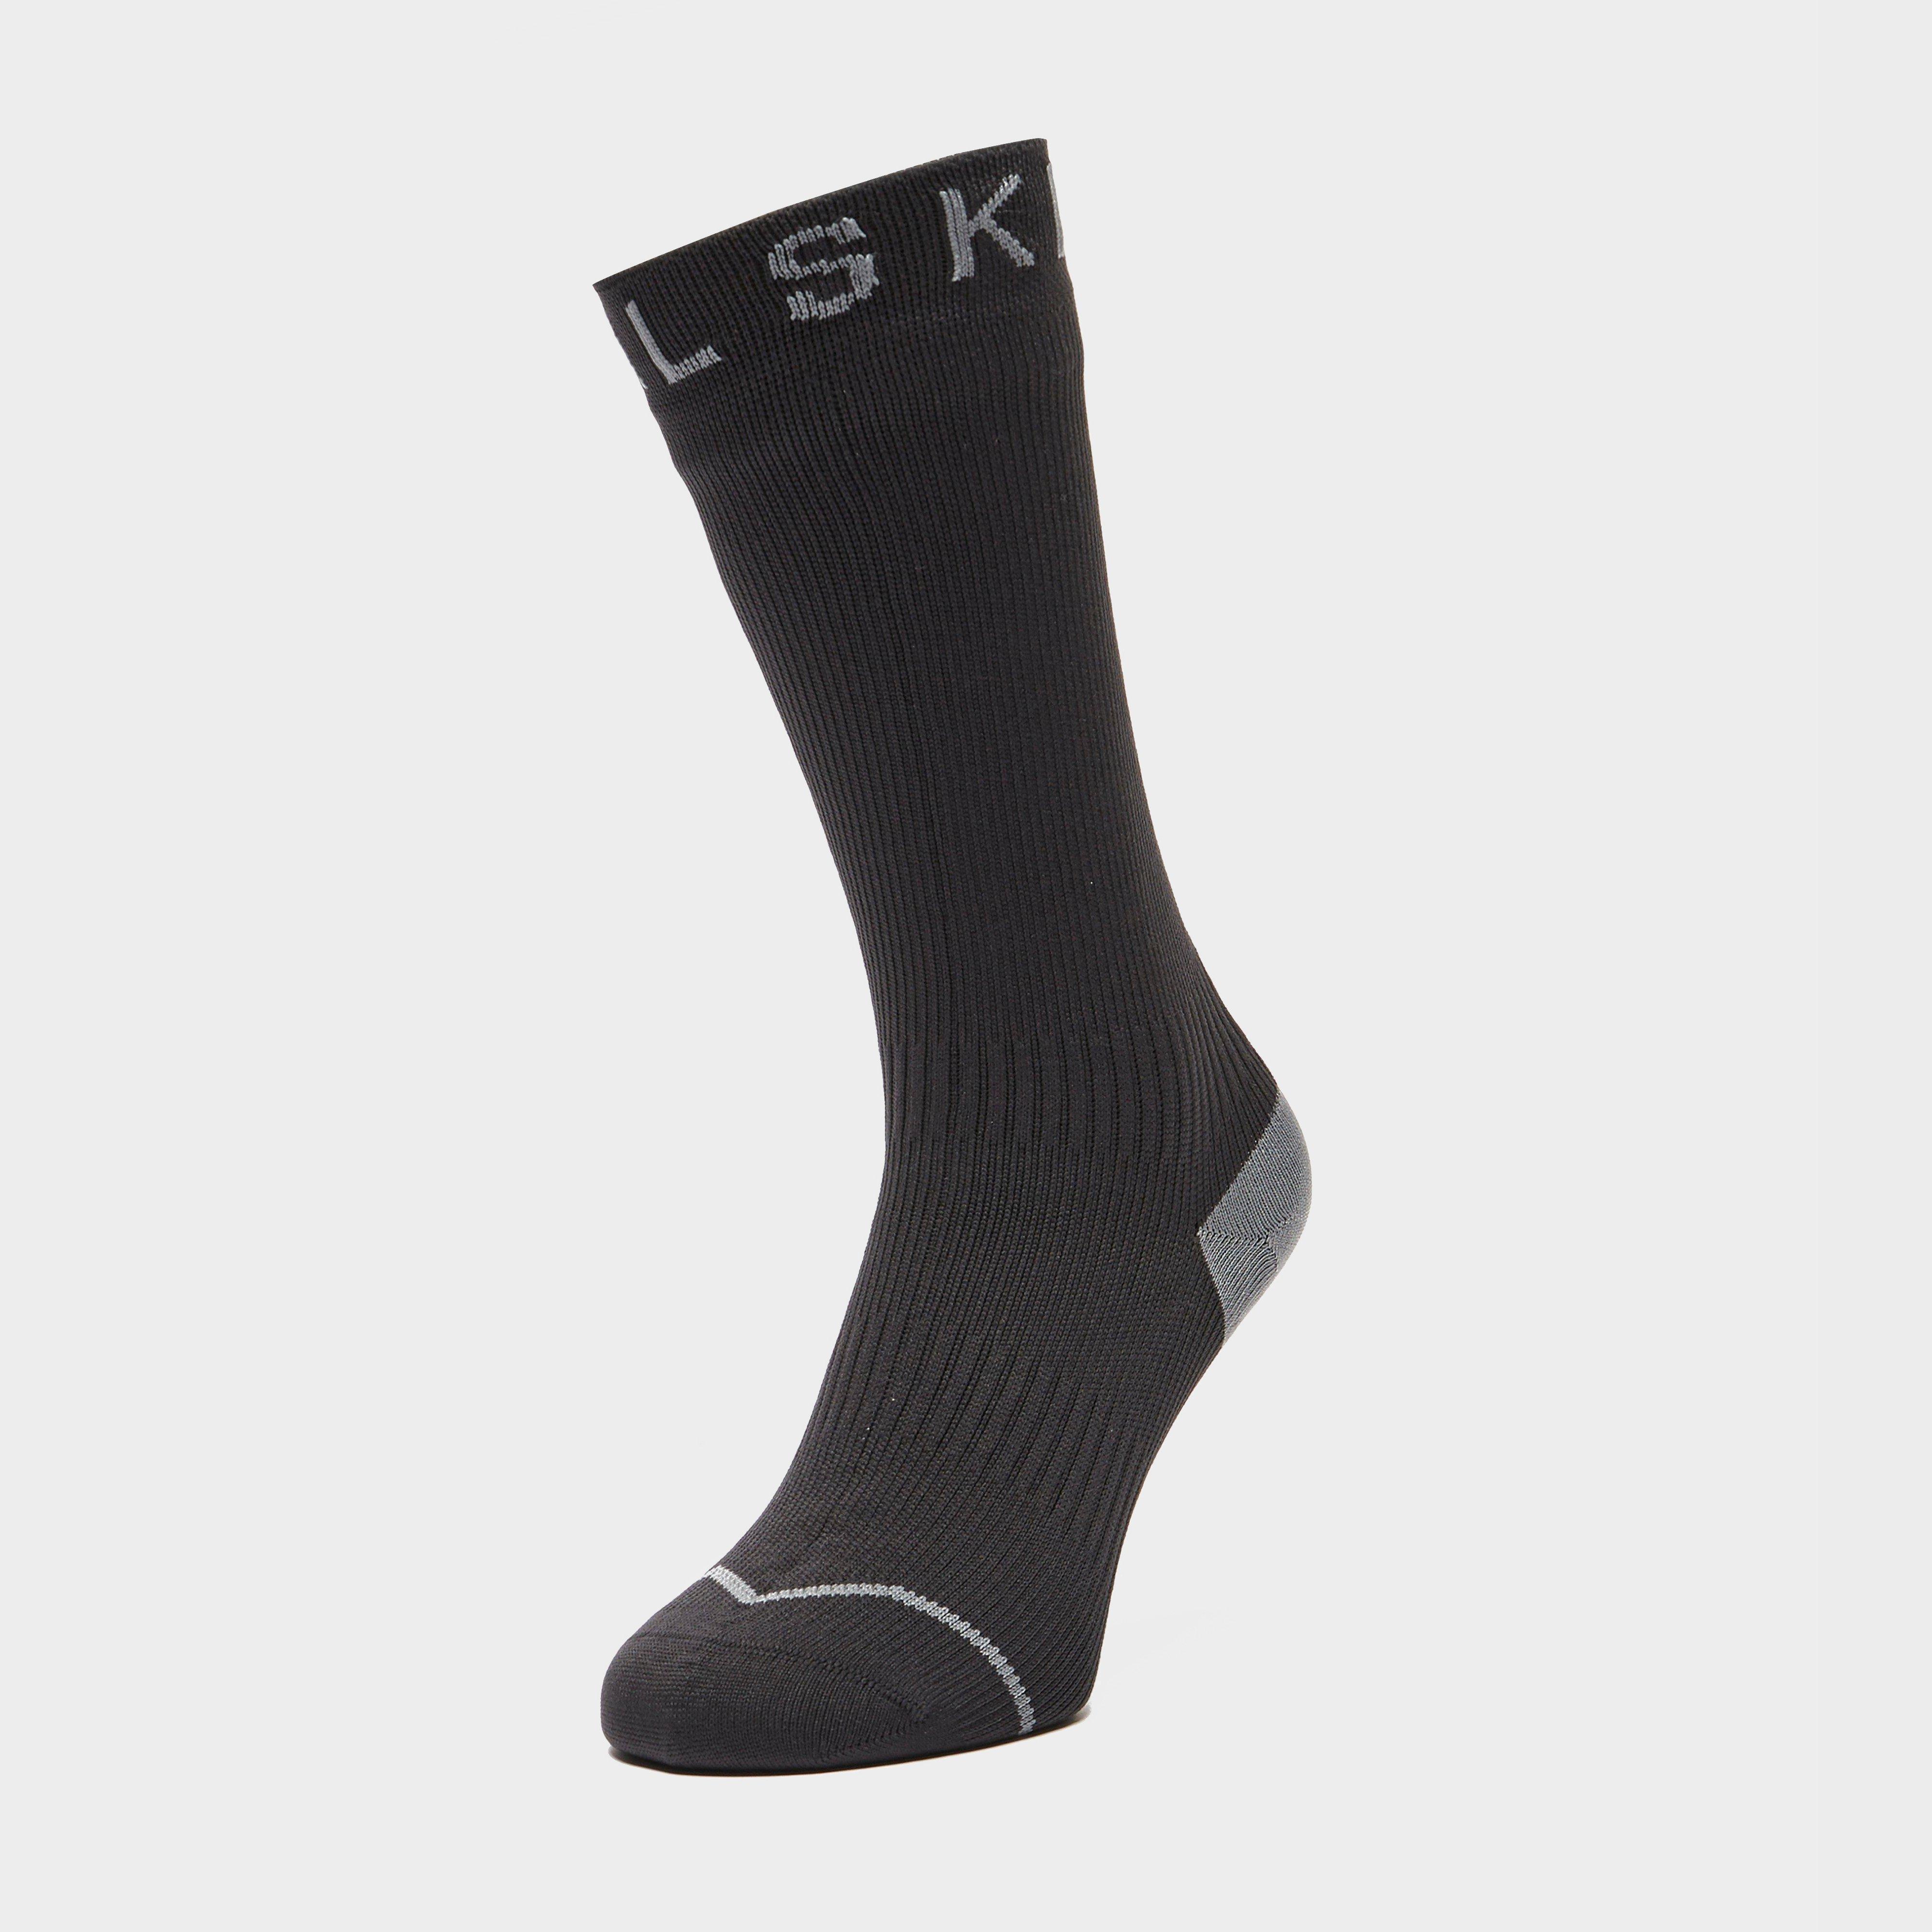  Sealskinz Waterproof All Weather Mid Length Socks